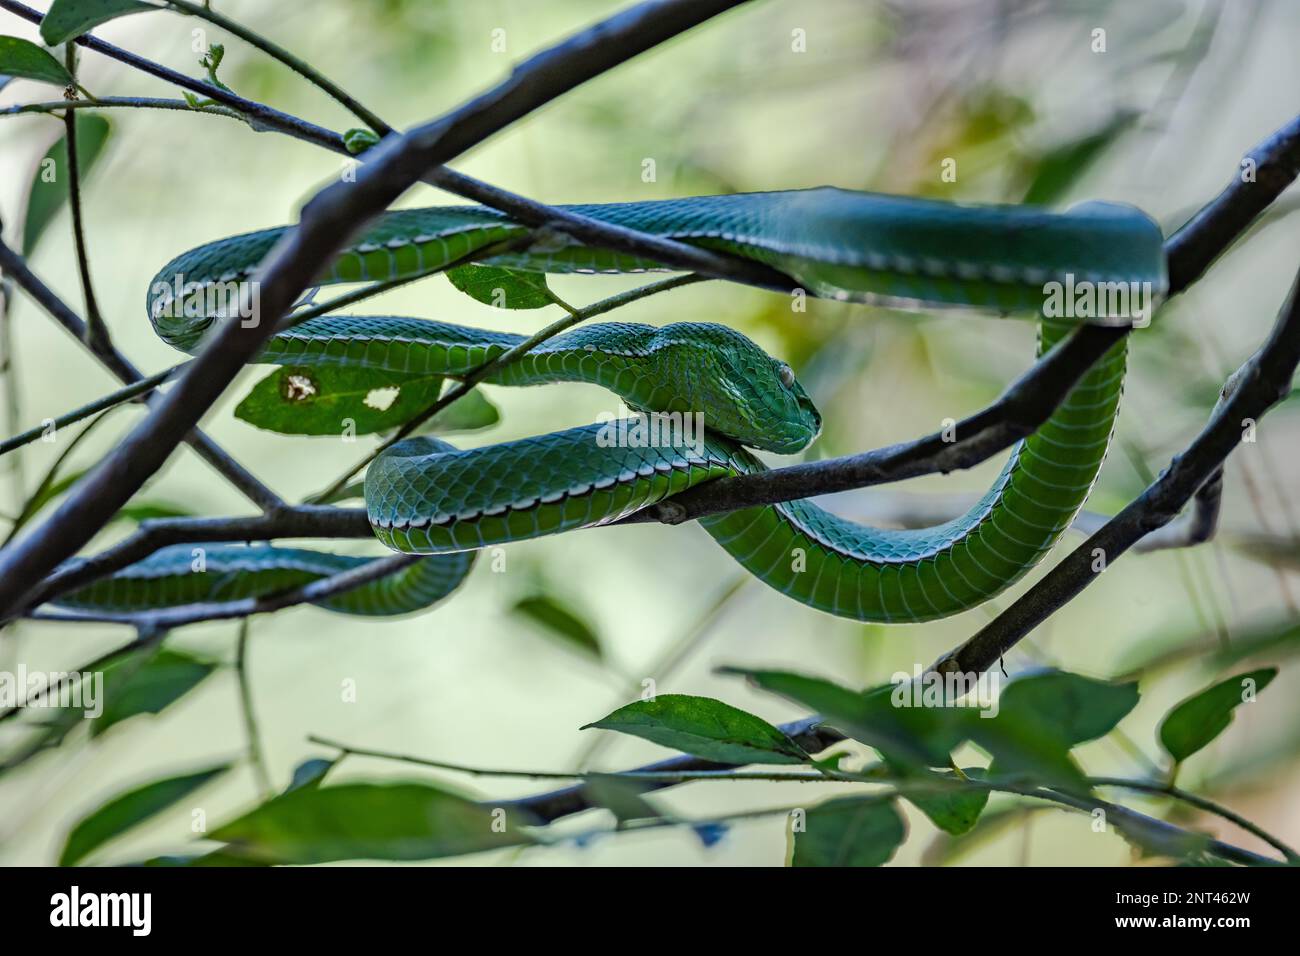 Un serpent vipère vert venimeux (Trimeresurus sp.) enroulé sur un arbre. Thaïlande. Banque D'Images